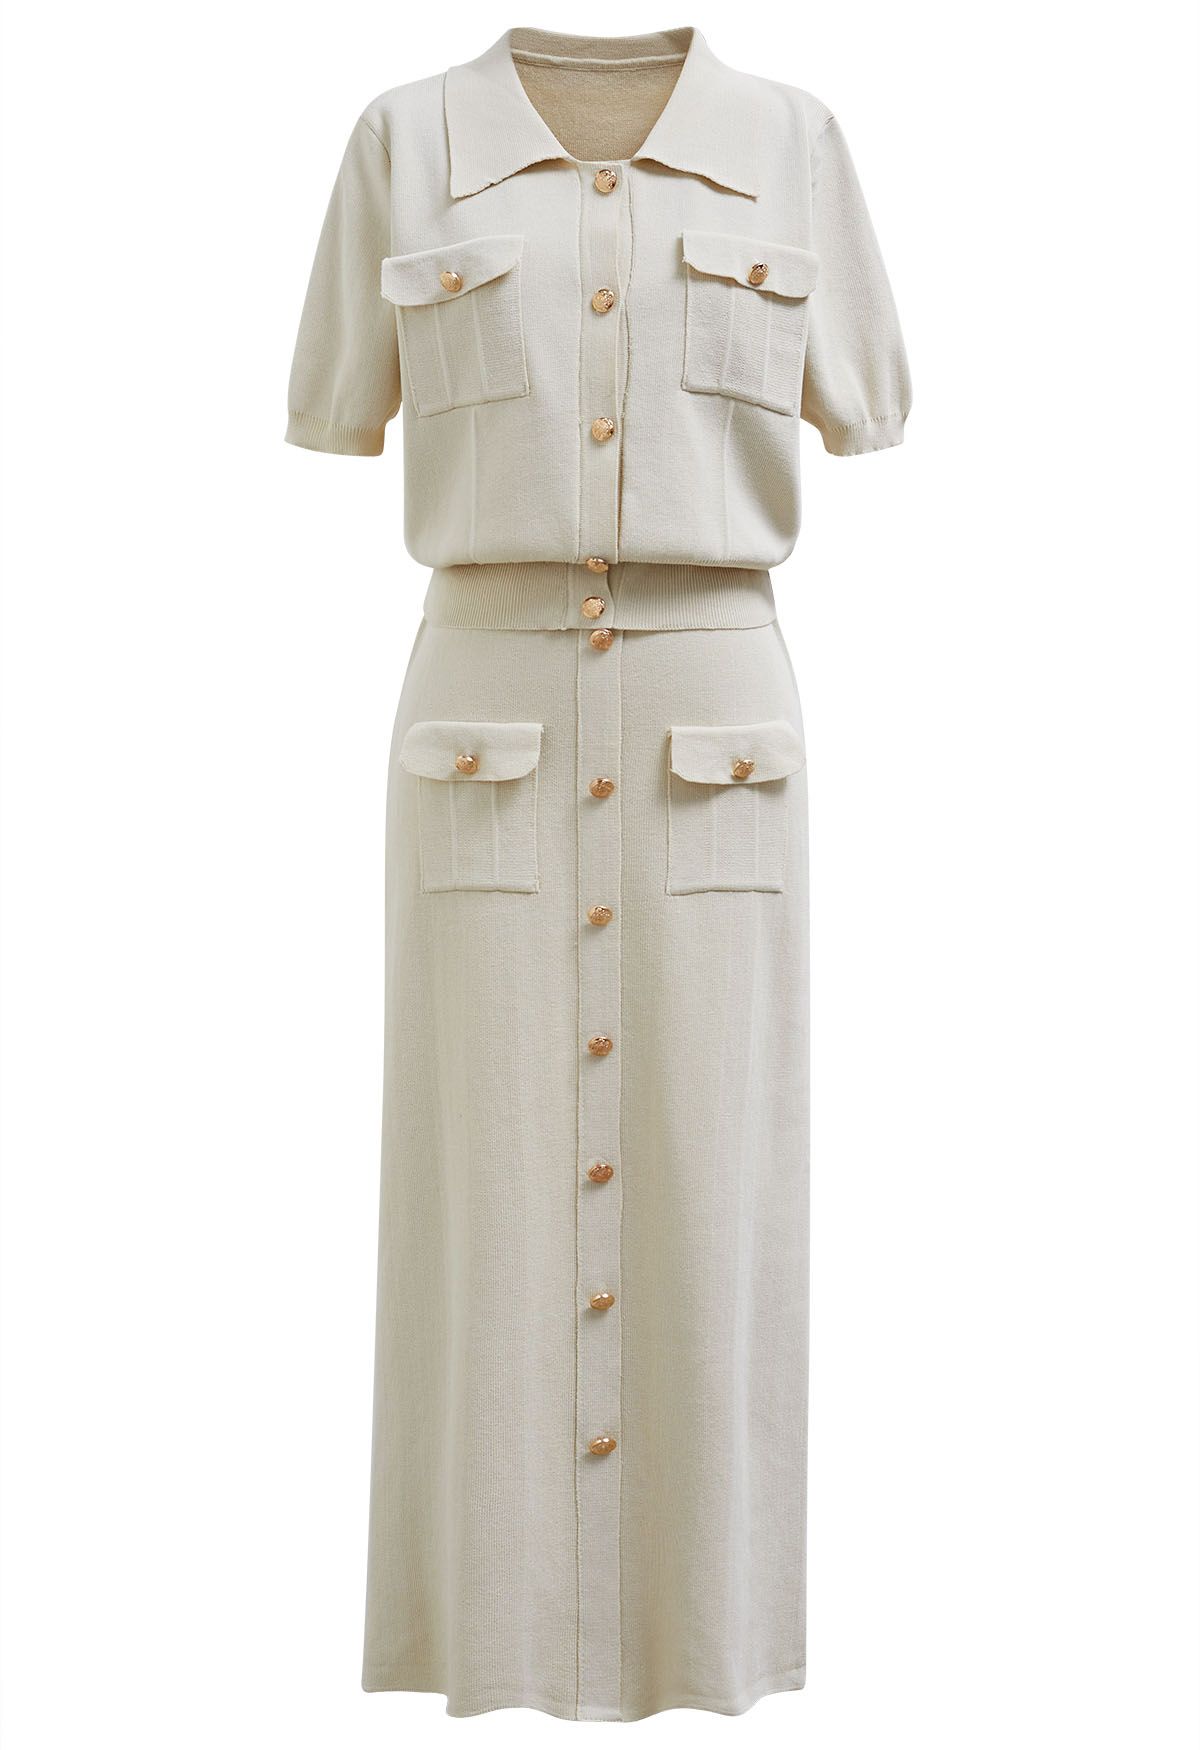 Conjunto de falda midi y top de punto de manga corta con botones destacados en marfil